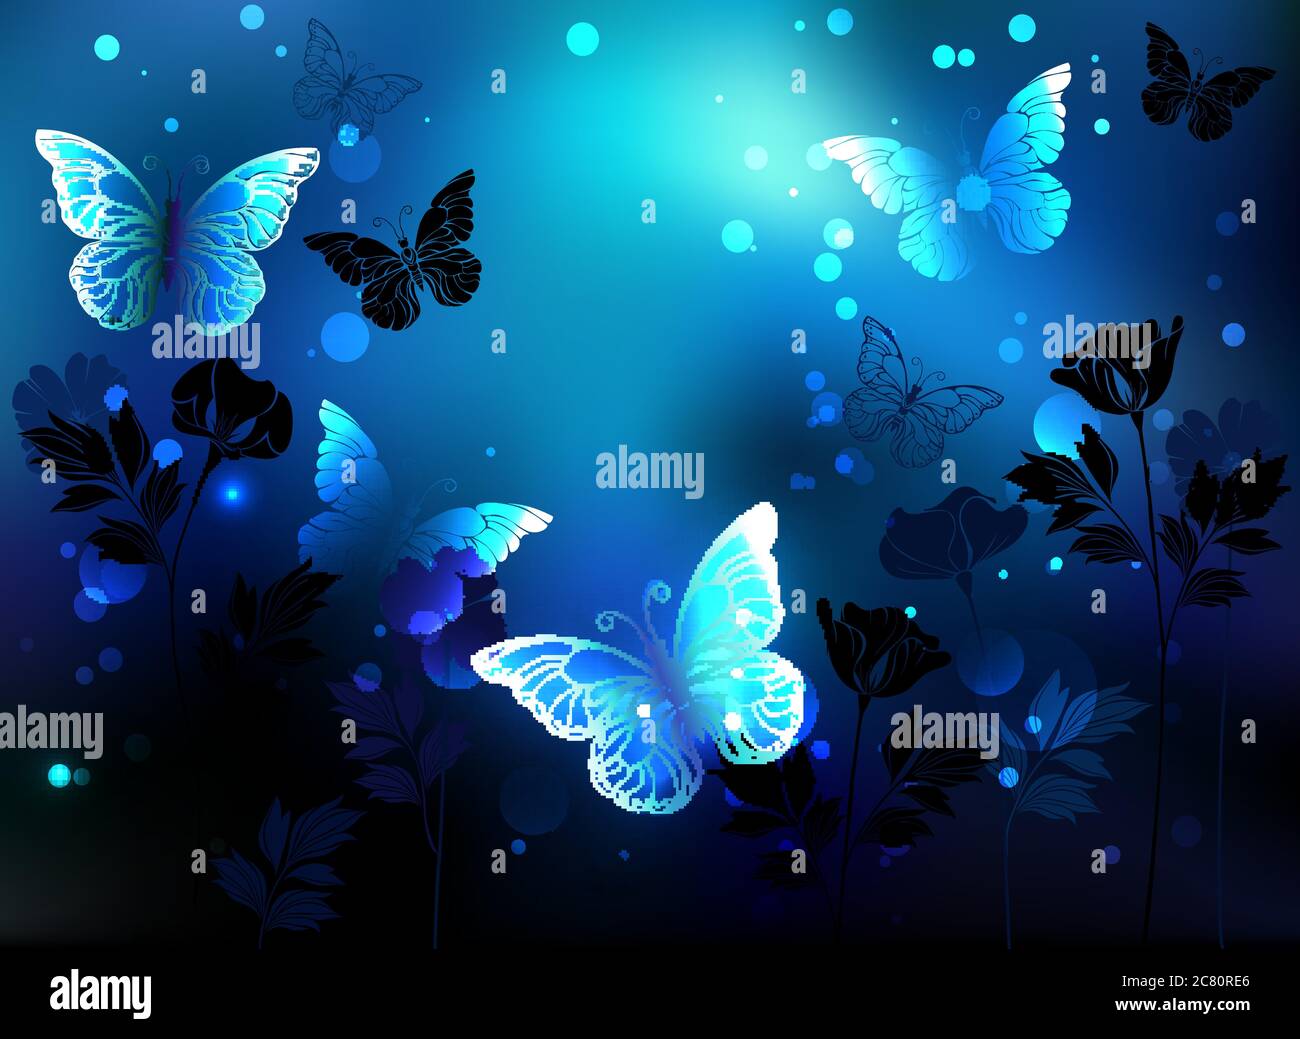 Papillons lumineux et lumineux sur fond bleu, nuit, lumineux avec fleurs silhouettes de plantes sauvages. Illustration de Vecteur